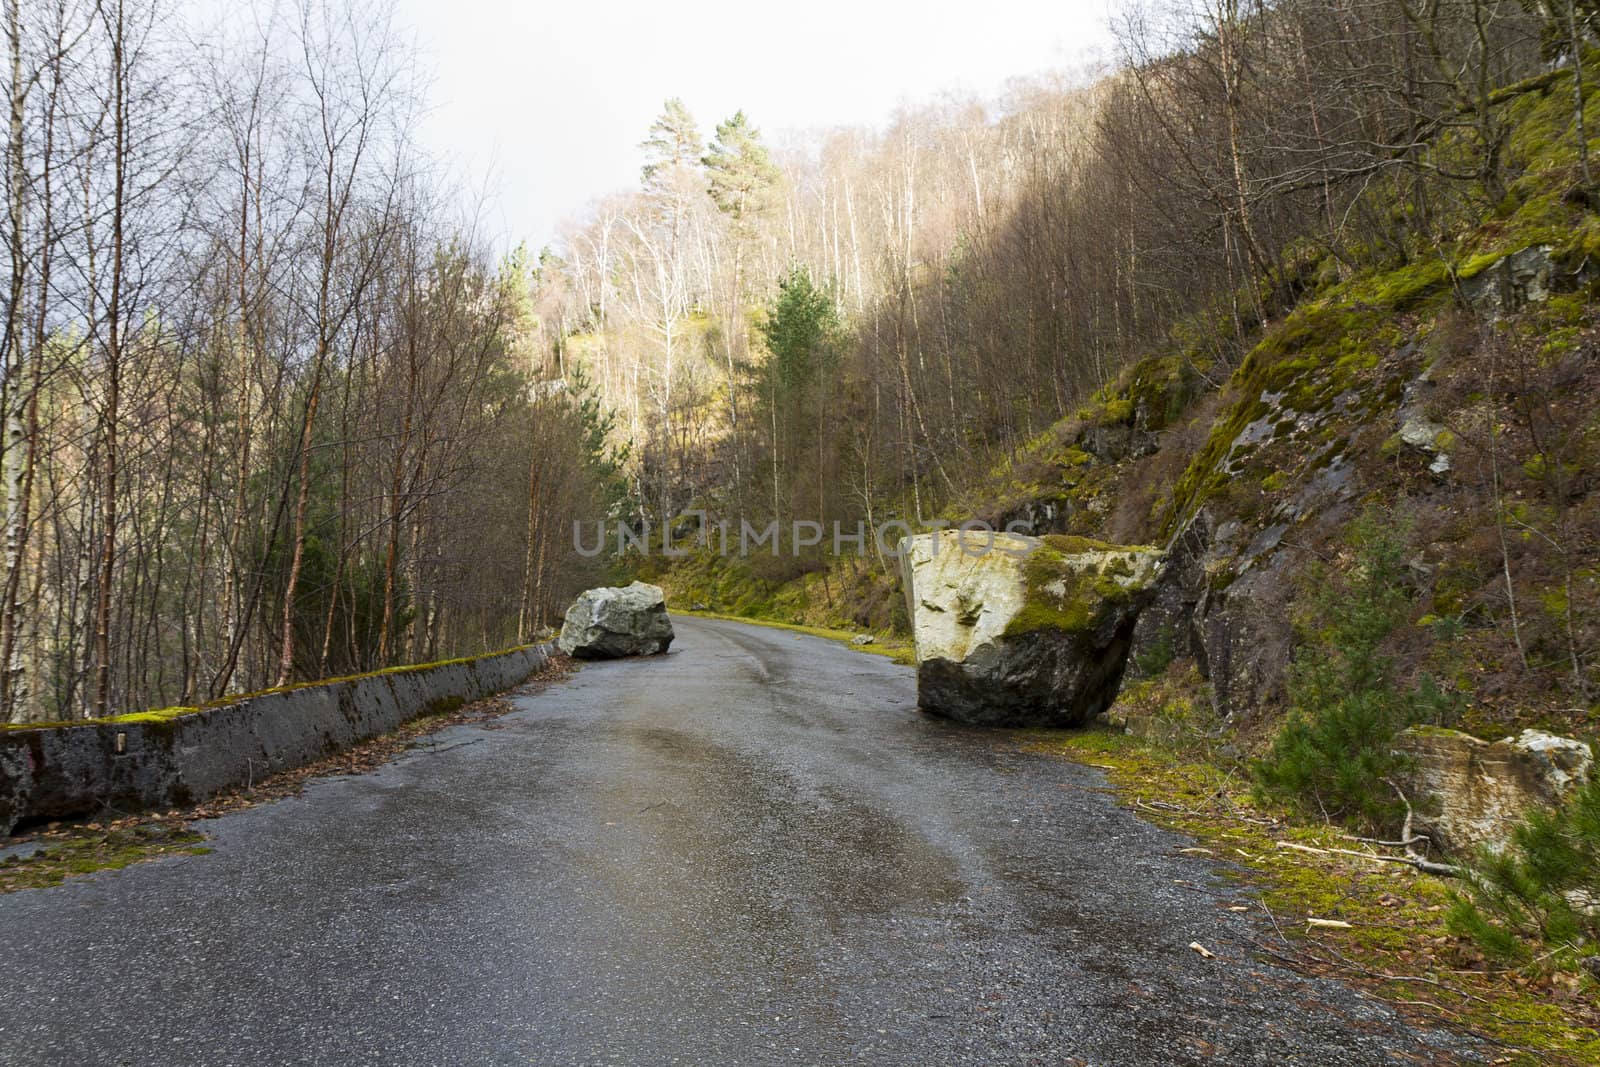 unused, run-down road in rural landscape - norway